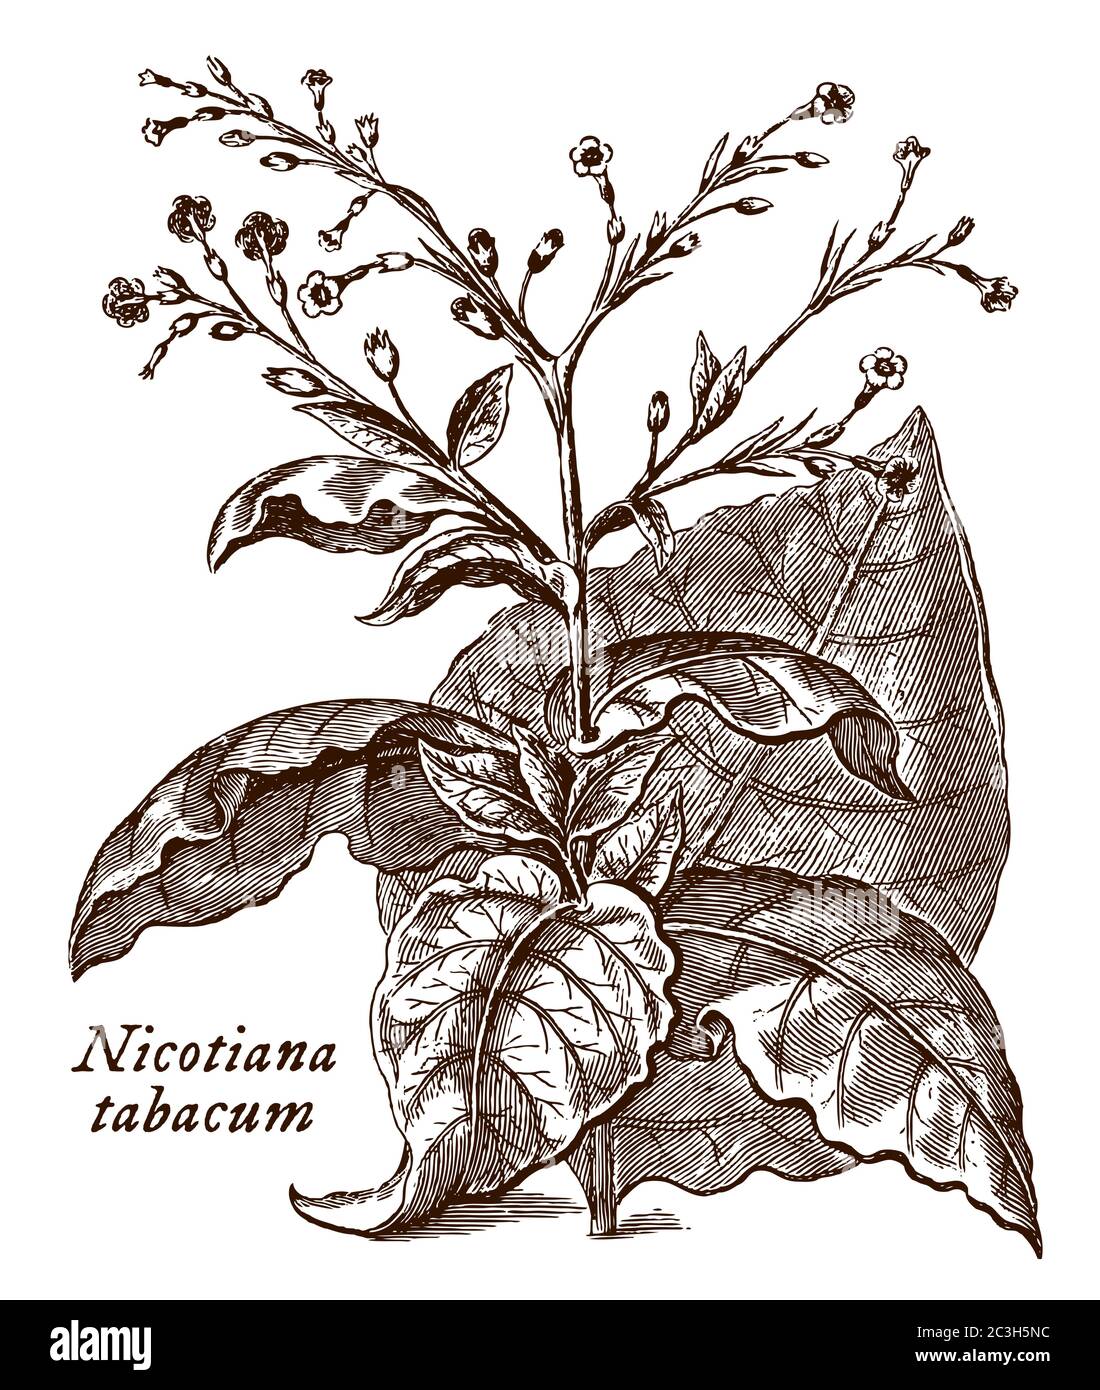 Branche avec les feuilles et les fleurs de l'usine de tabac avec le nom scientifique représenté nicotiana tabacum, après une gravure du XVIIIe siècle Illustration de Vecteur